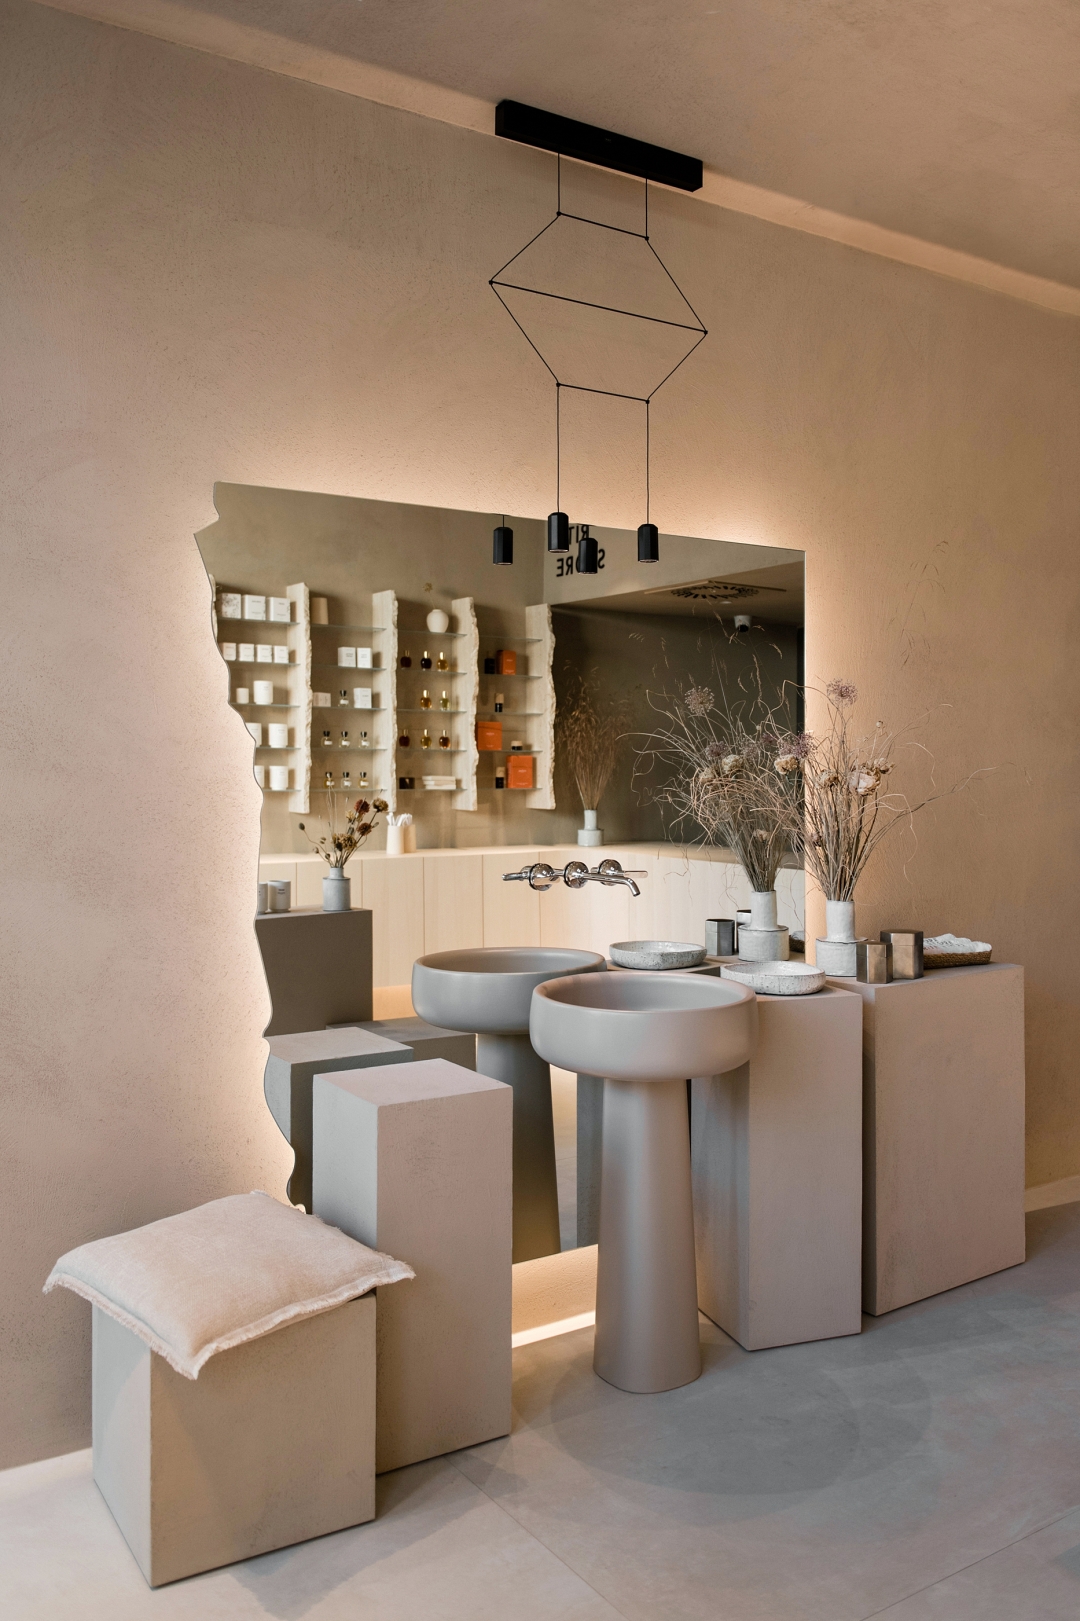 Otvoren je The Rite Store – Jedna od najljepših beauty concept trgovina u Zagrebu